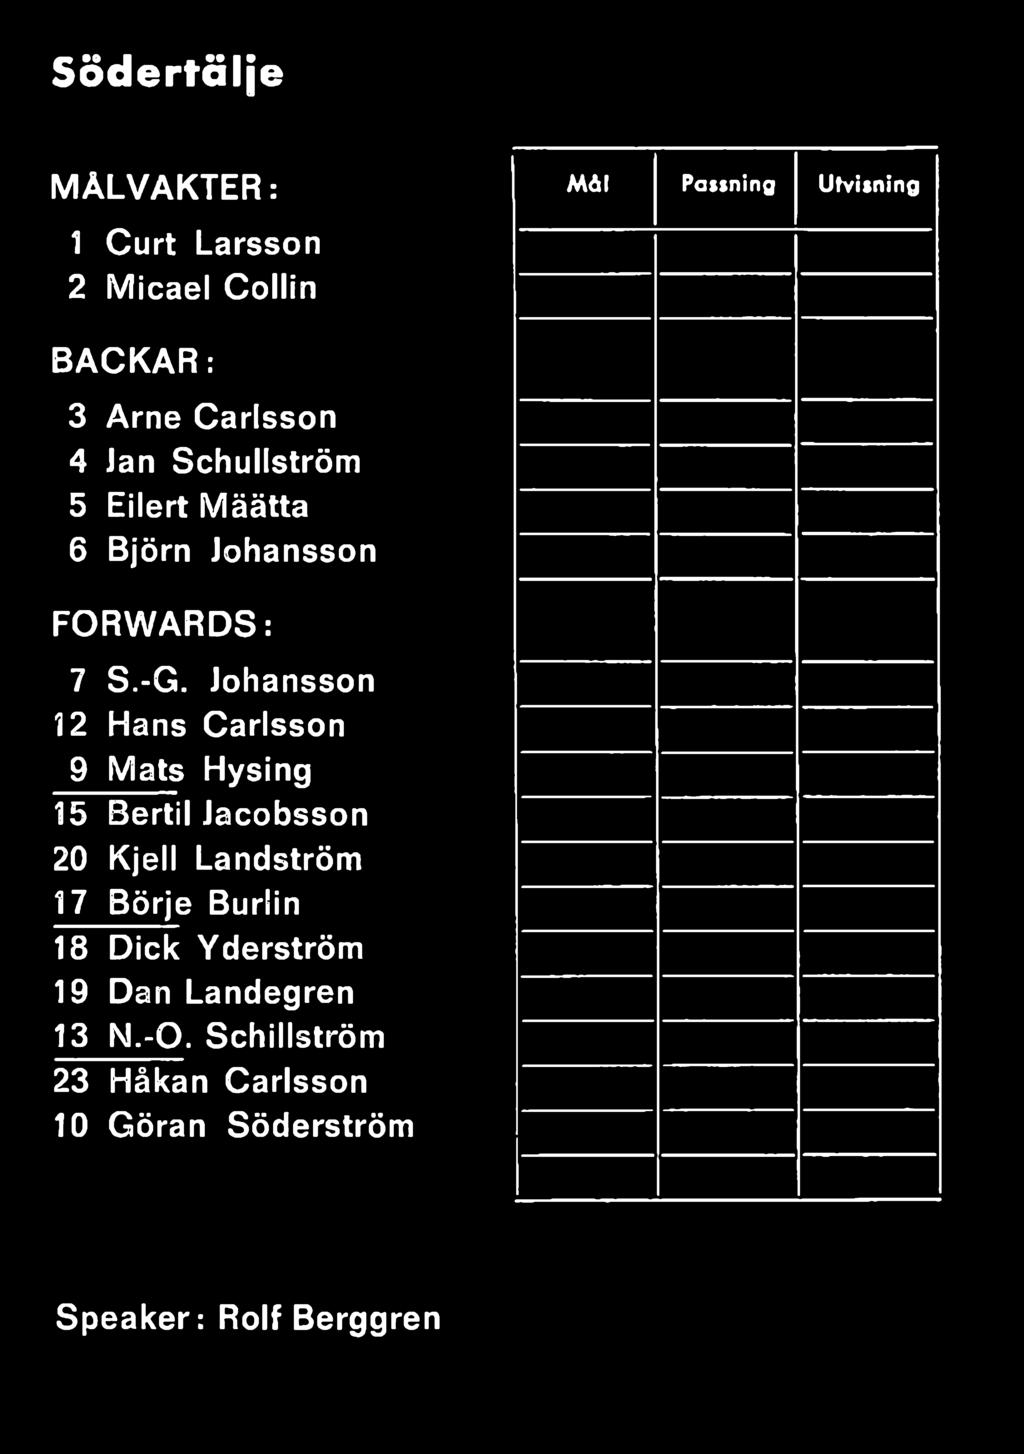 Johansson 12 Hans Carlsson 9 Mats Hysing 15 Bertil Jacobsson 20 Kjell Landström 17 Börje Burlin